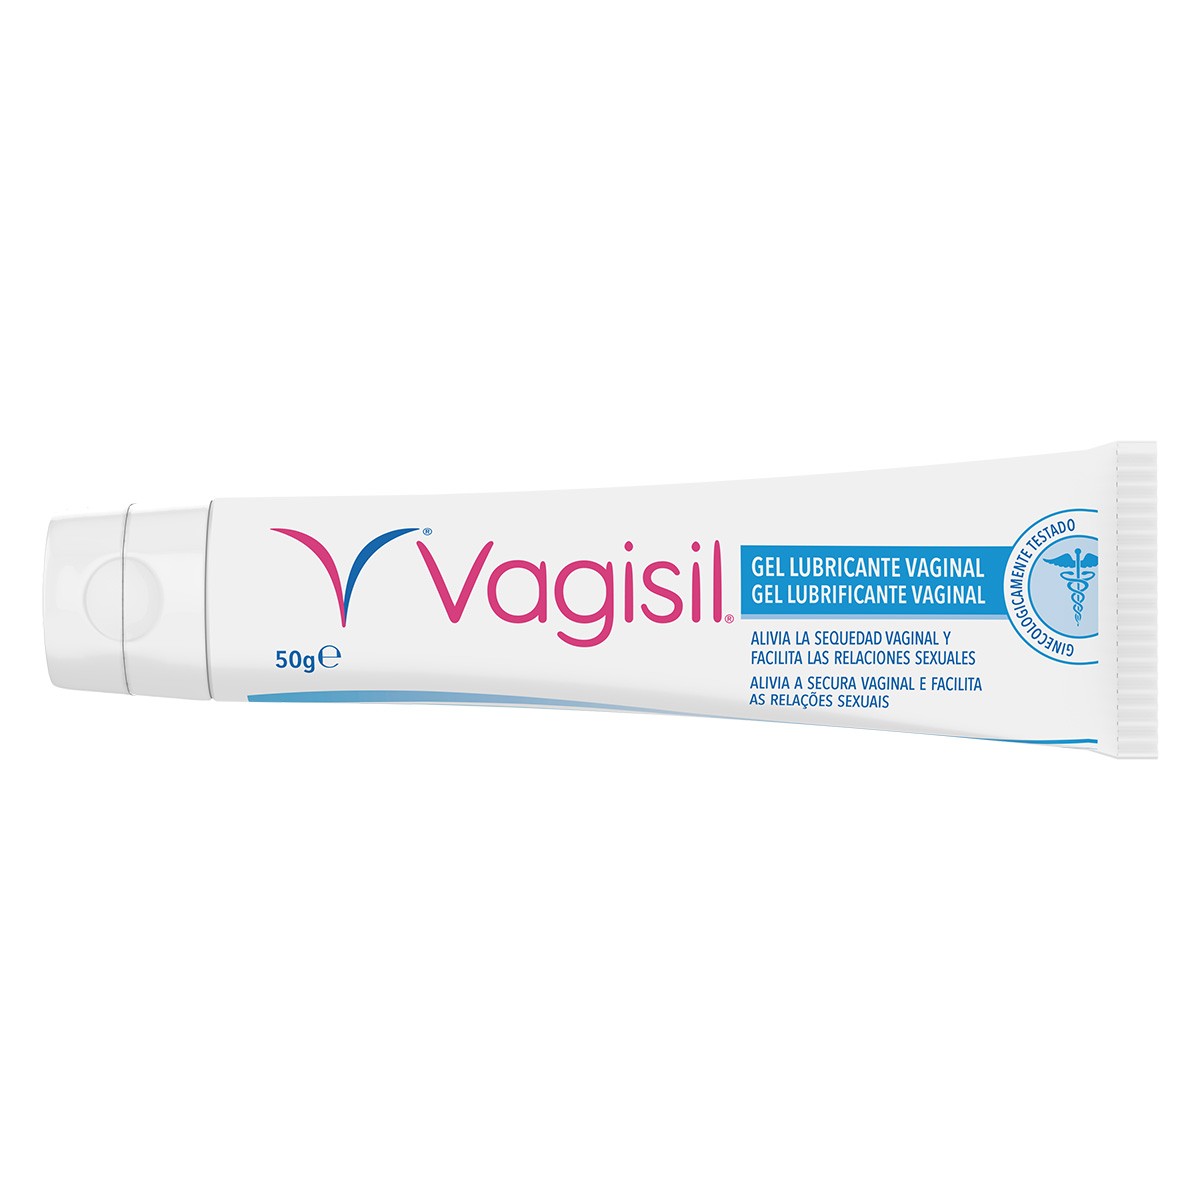 Imagen de Vagisil gel lubricante vaginal 50g